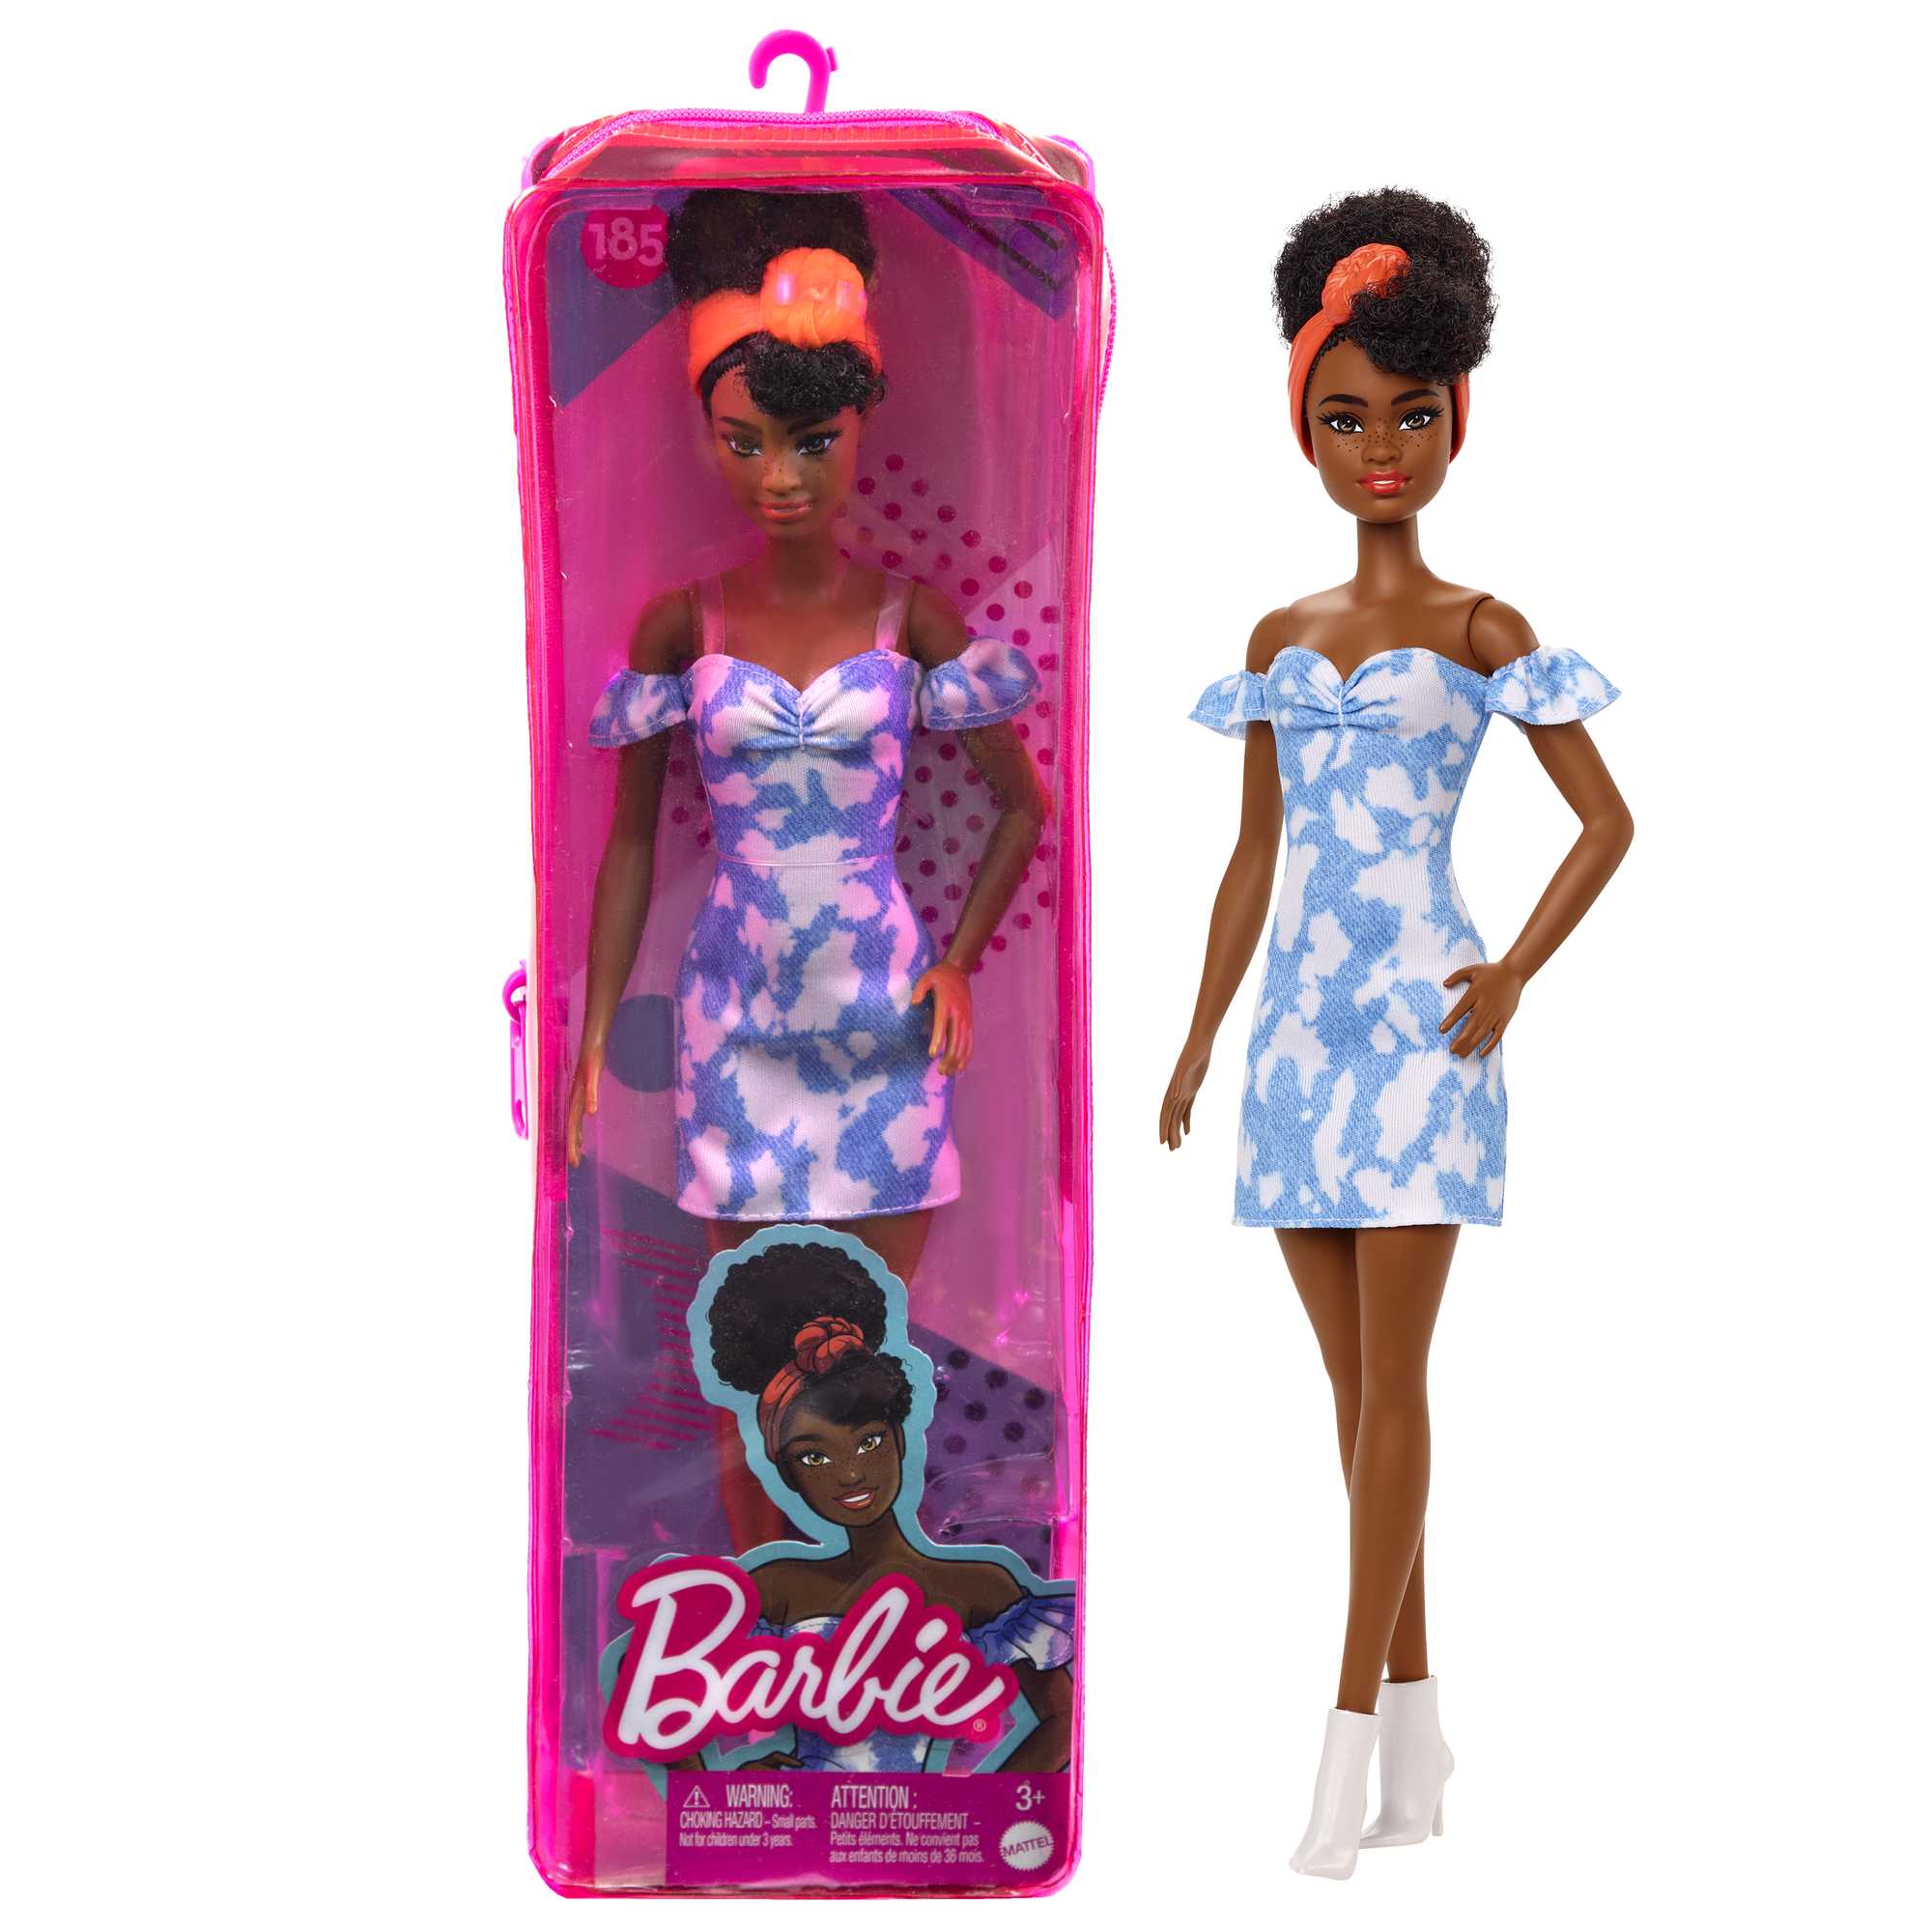 Mattel - Poupée Barbie Fashionistas : Poupée métisse aux cheveux